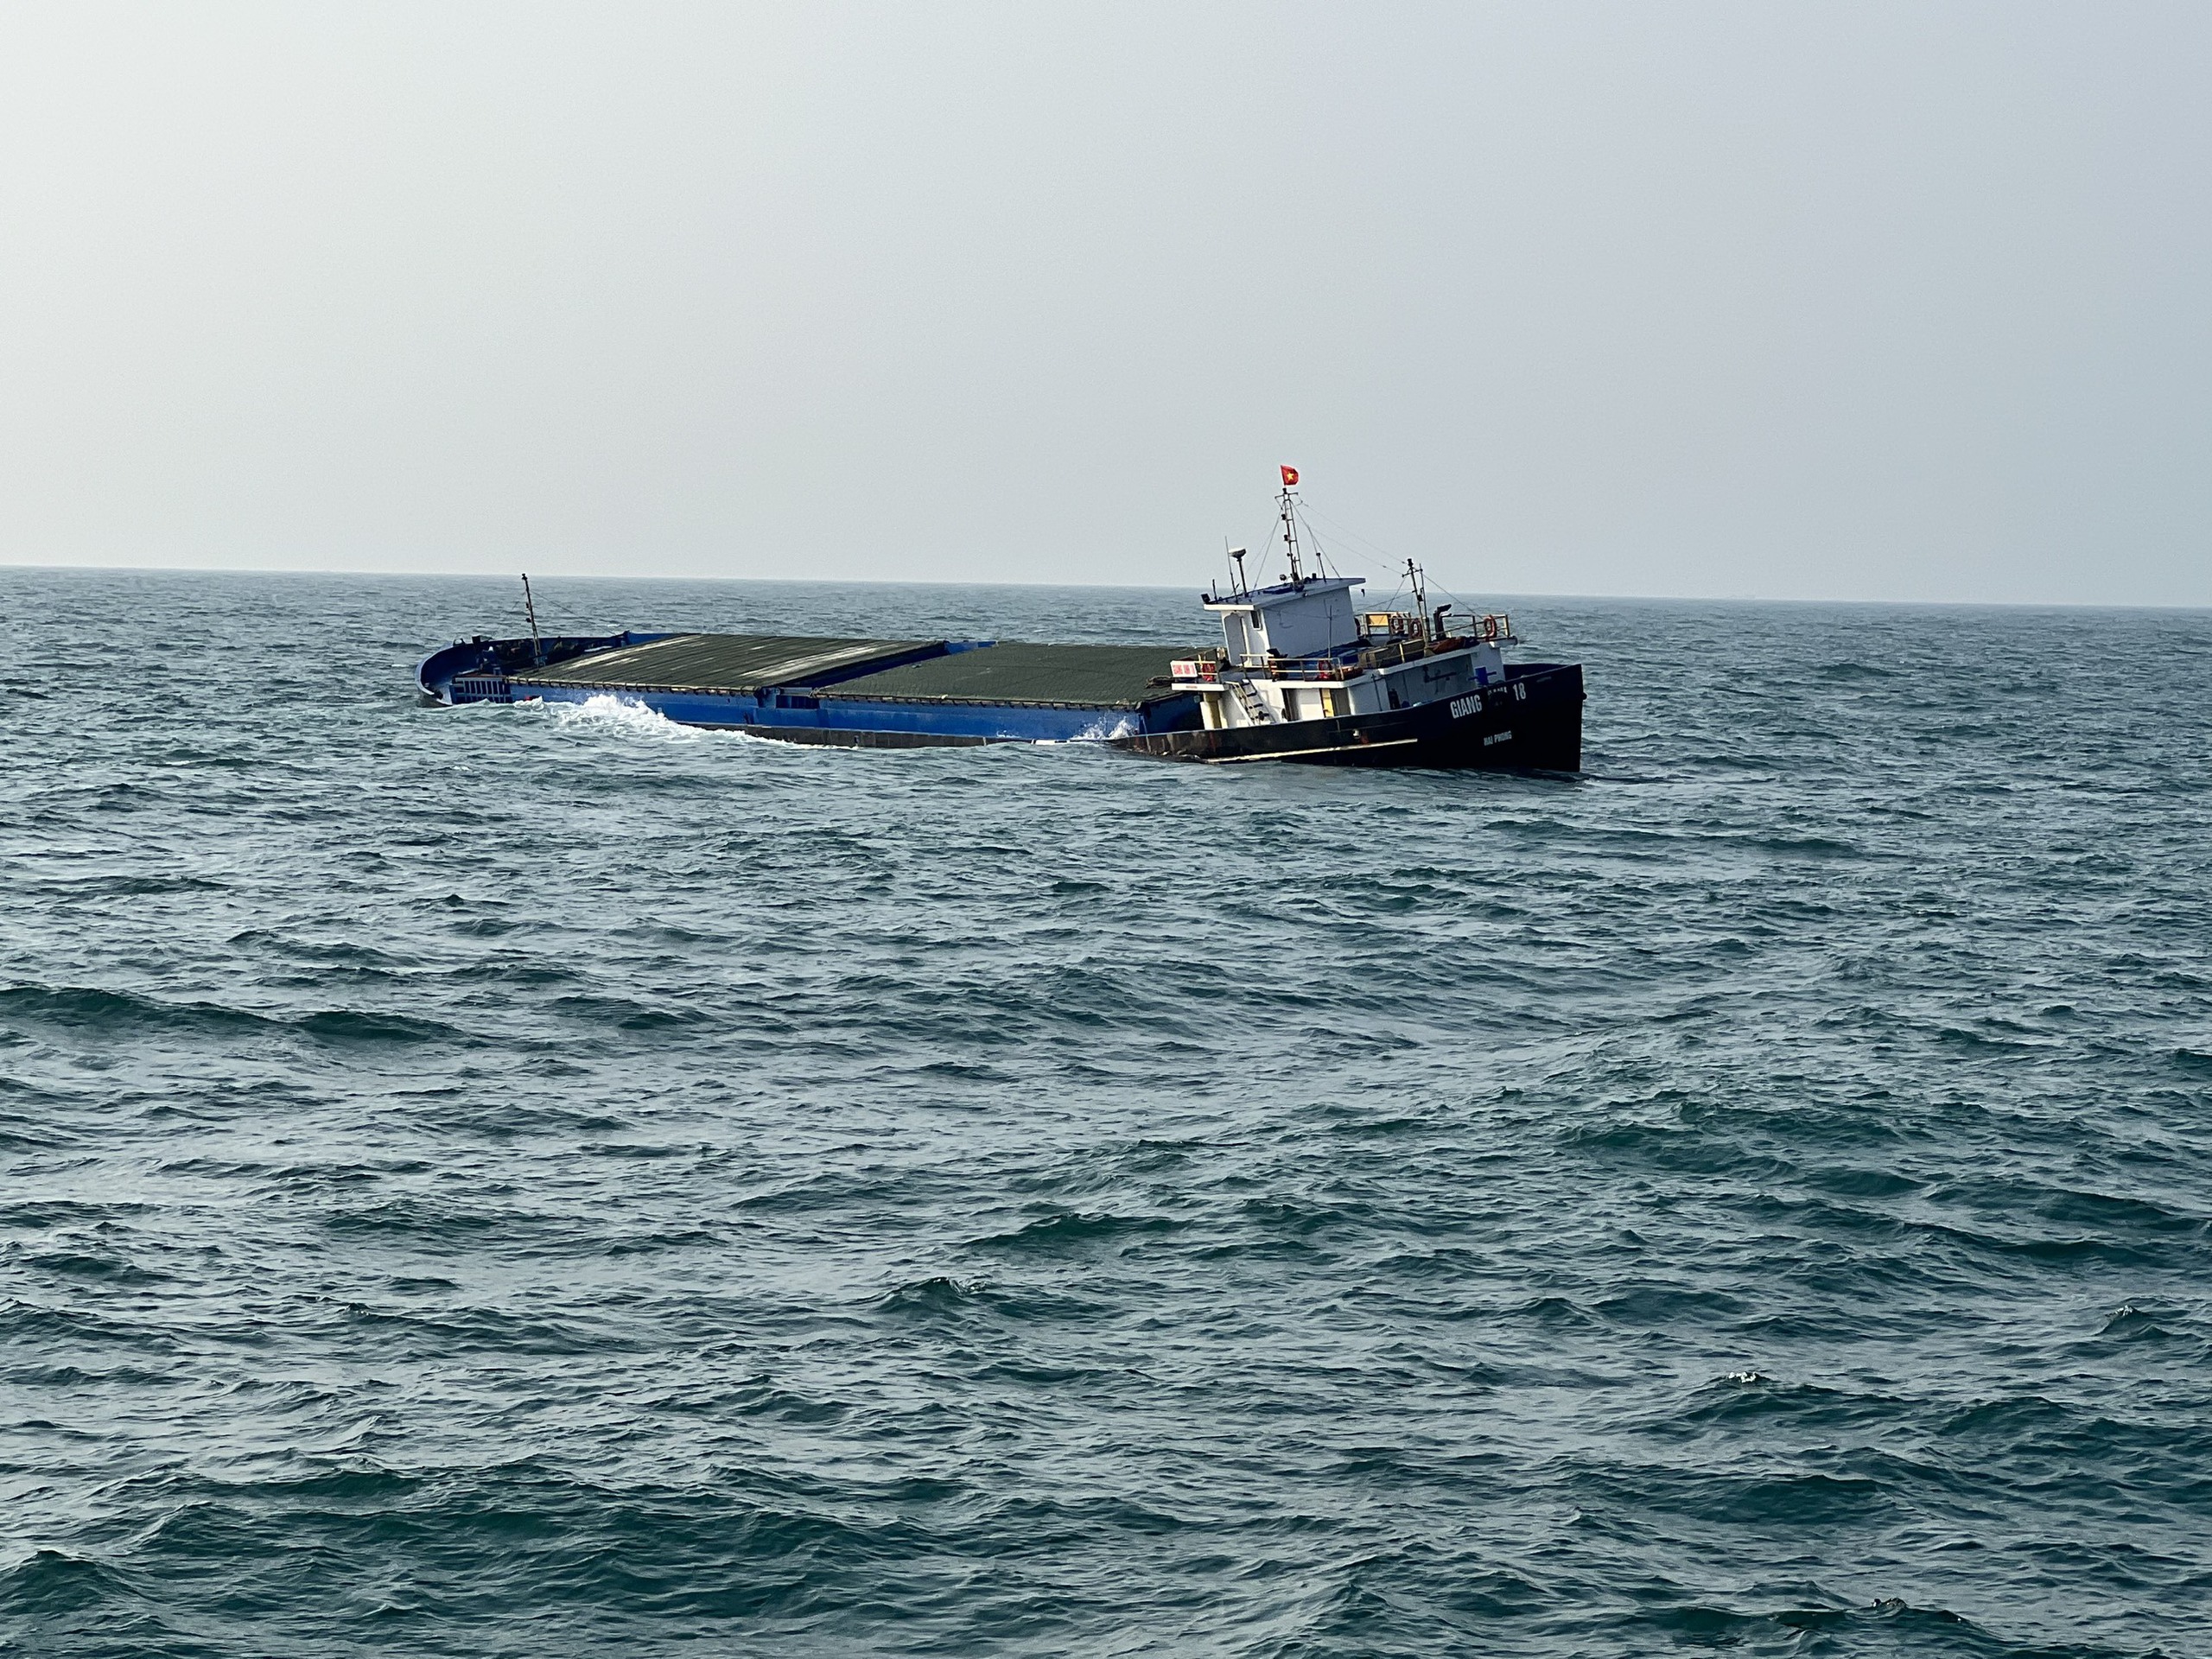 Hình ảnh hiện trường cứu 9 thuyền viên tàu Giang Anh 18 bị chìm do đâm vào bãi đá cạn- Ảnh 1.